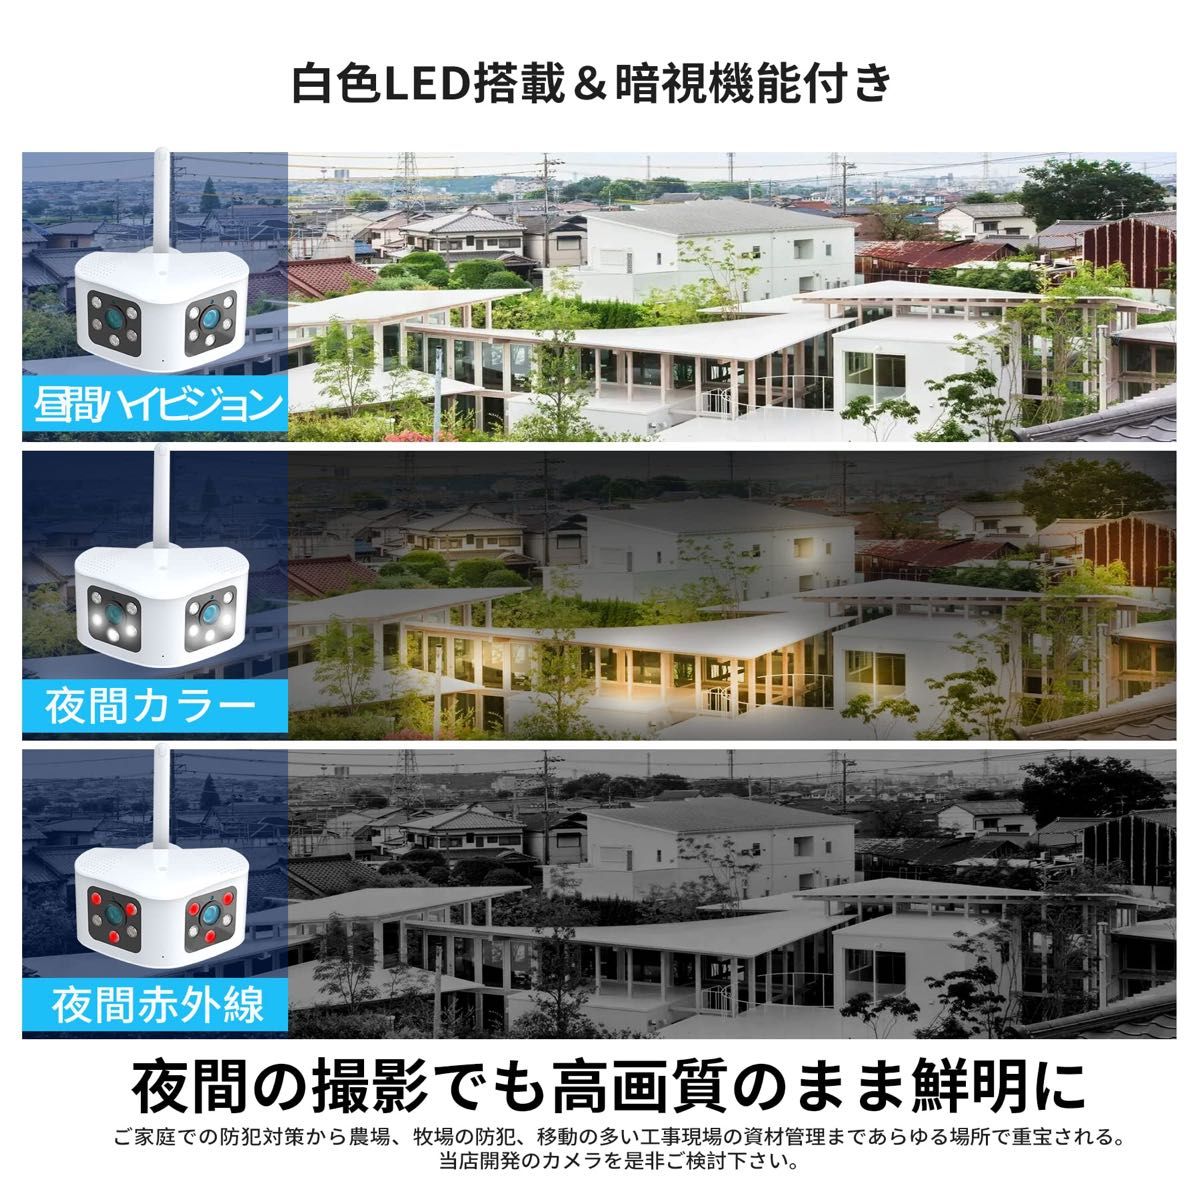 【特別価格】RIUQIMO 防犯カメラ 屋外 ワイヤレス 4K/660万 wifiカメラ 2眼レンズ 165度超広角 ピクチャ 